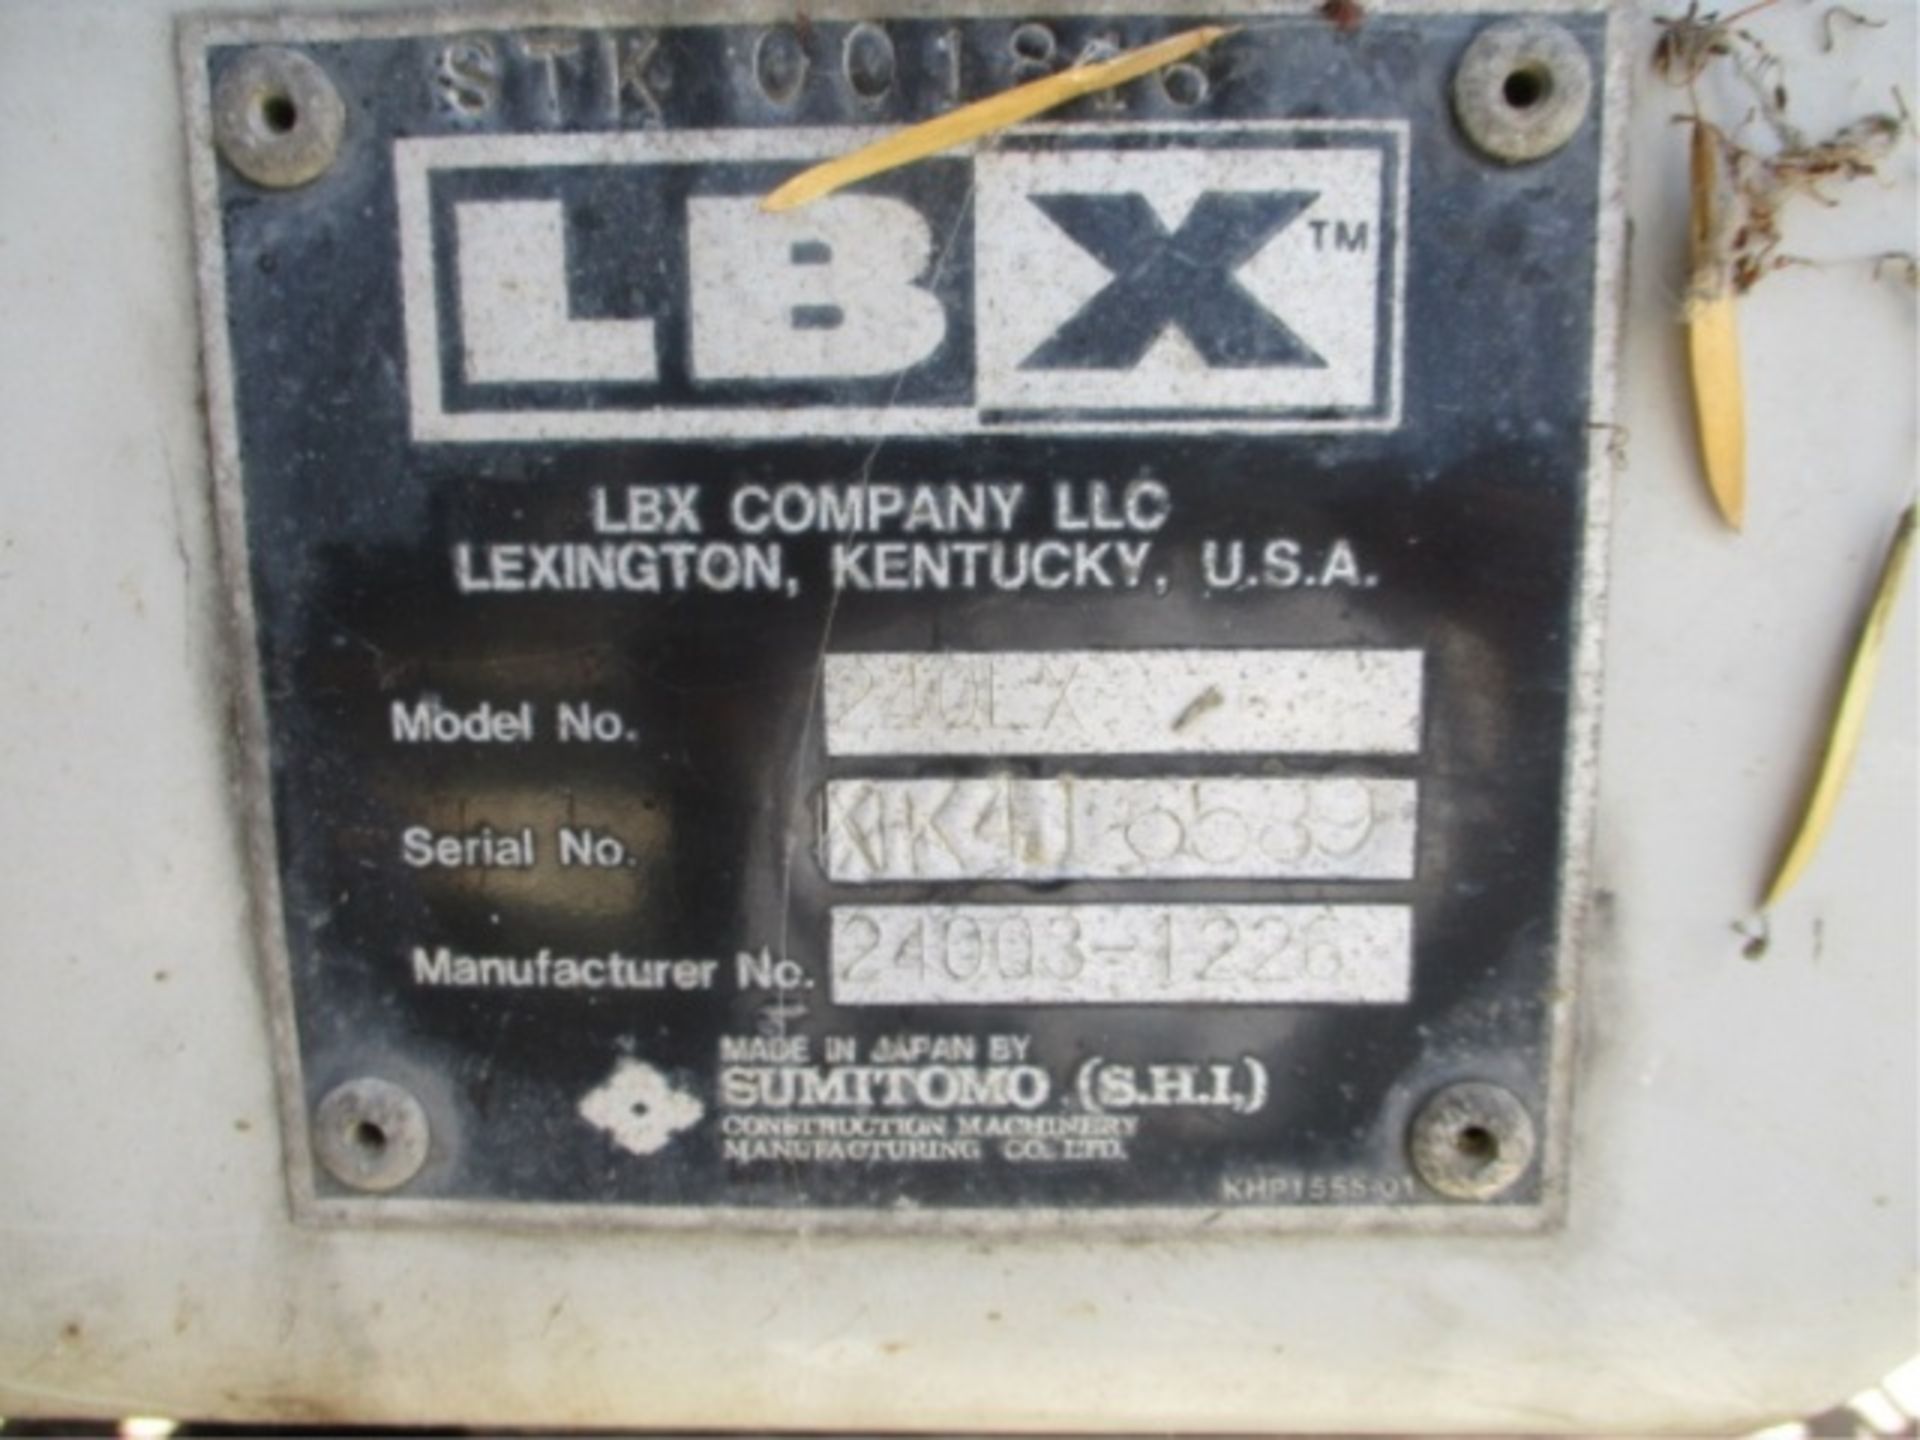 2005 Linkbelt 240 LX Hydraulic Excavator, Isuzu 6-Cyl Diesel, Hendrix Q/C, Cab W/AC, 24" Tooth - Image 35 of 39